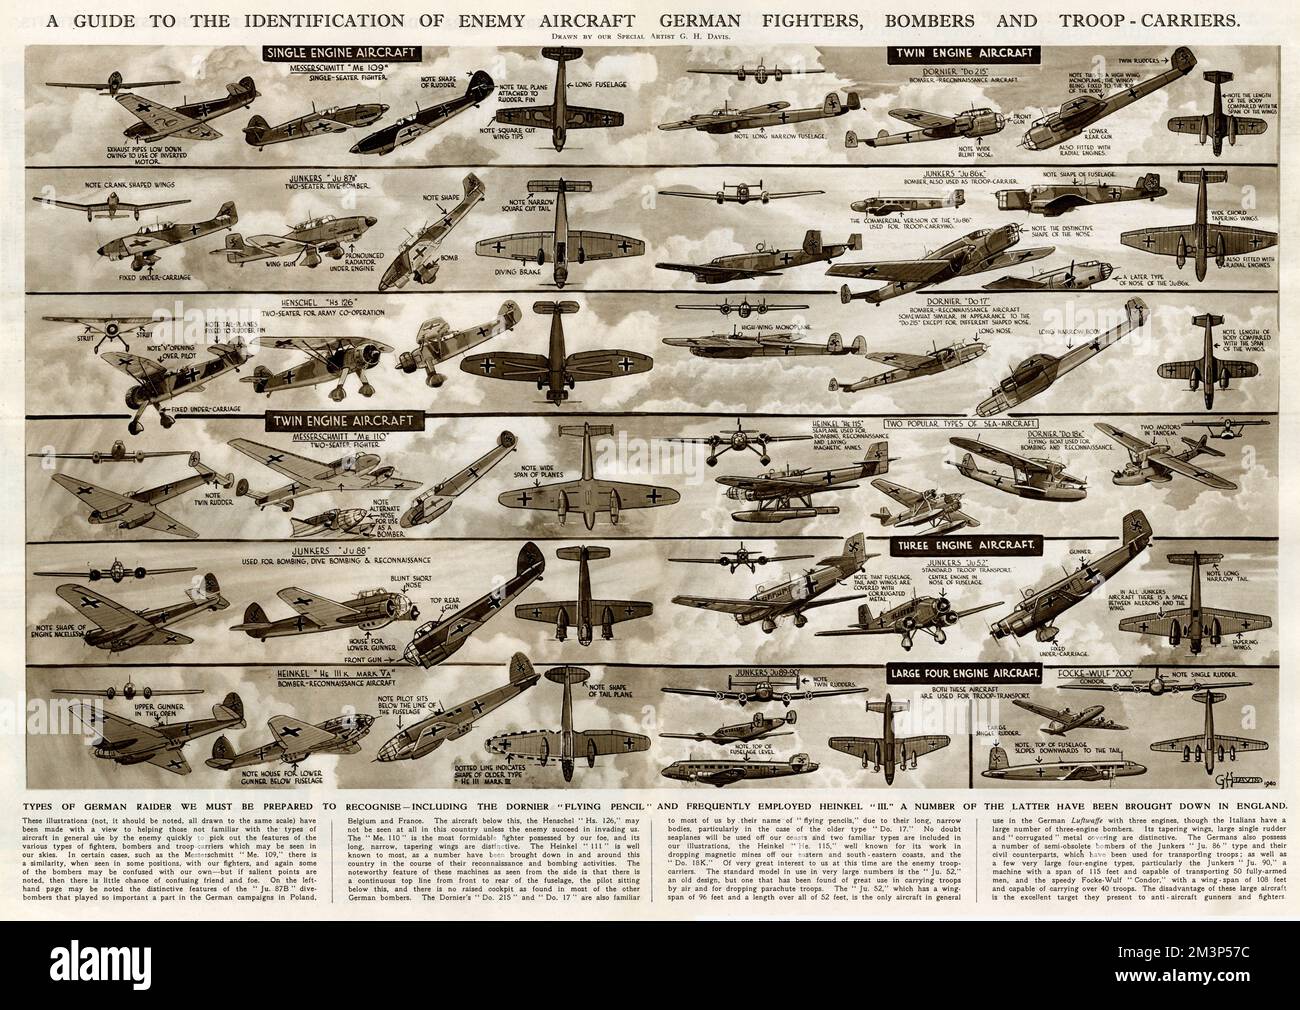 Una guida per l'identificazione di aerei nemici durante la seconda guerra mondiale: Combattenti tedeschi, bombardieri e portaerei da truppa. Tra cui la "matita volante" Dornier e Heinkel III. Data: 1940 Foto Stock